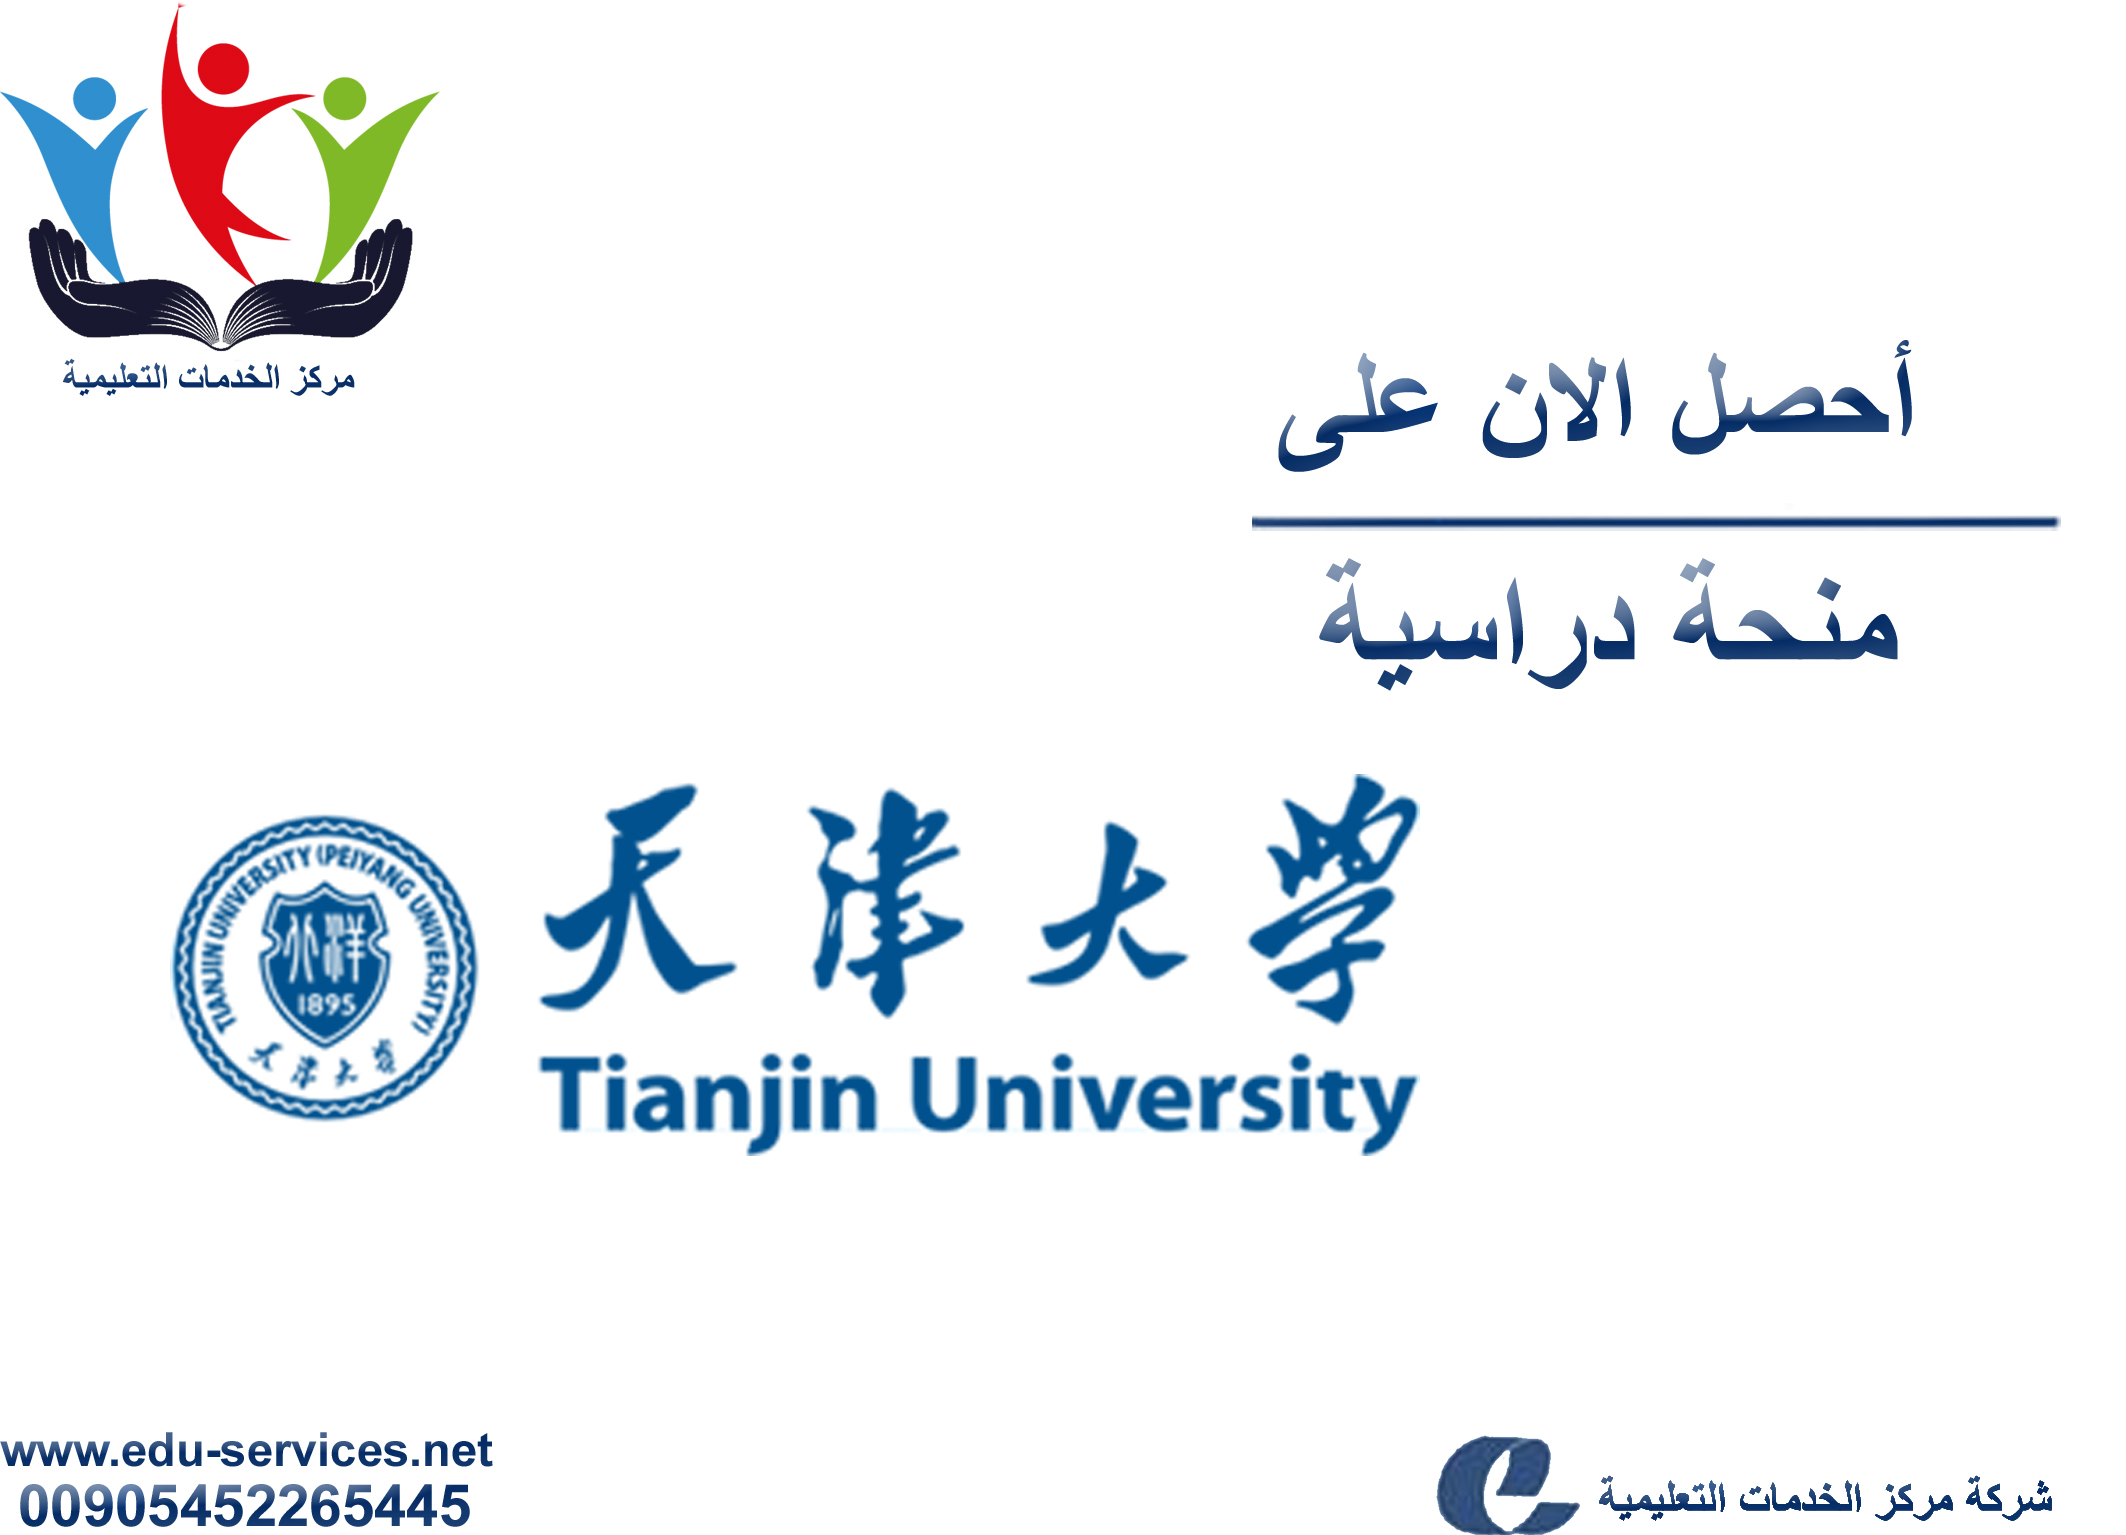 منح دراسية لدرجة البكالوريوس من Tianjin University في الصين للعام 2018